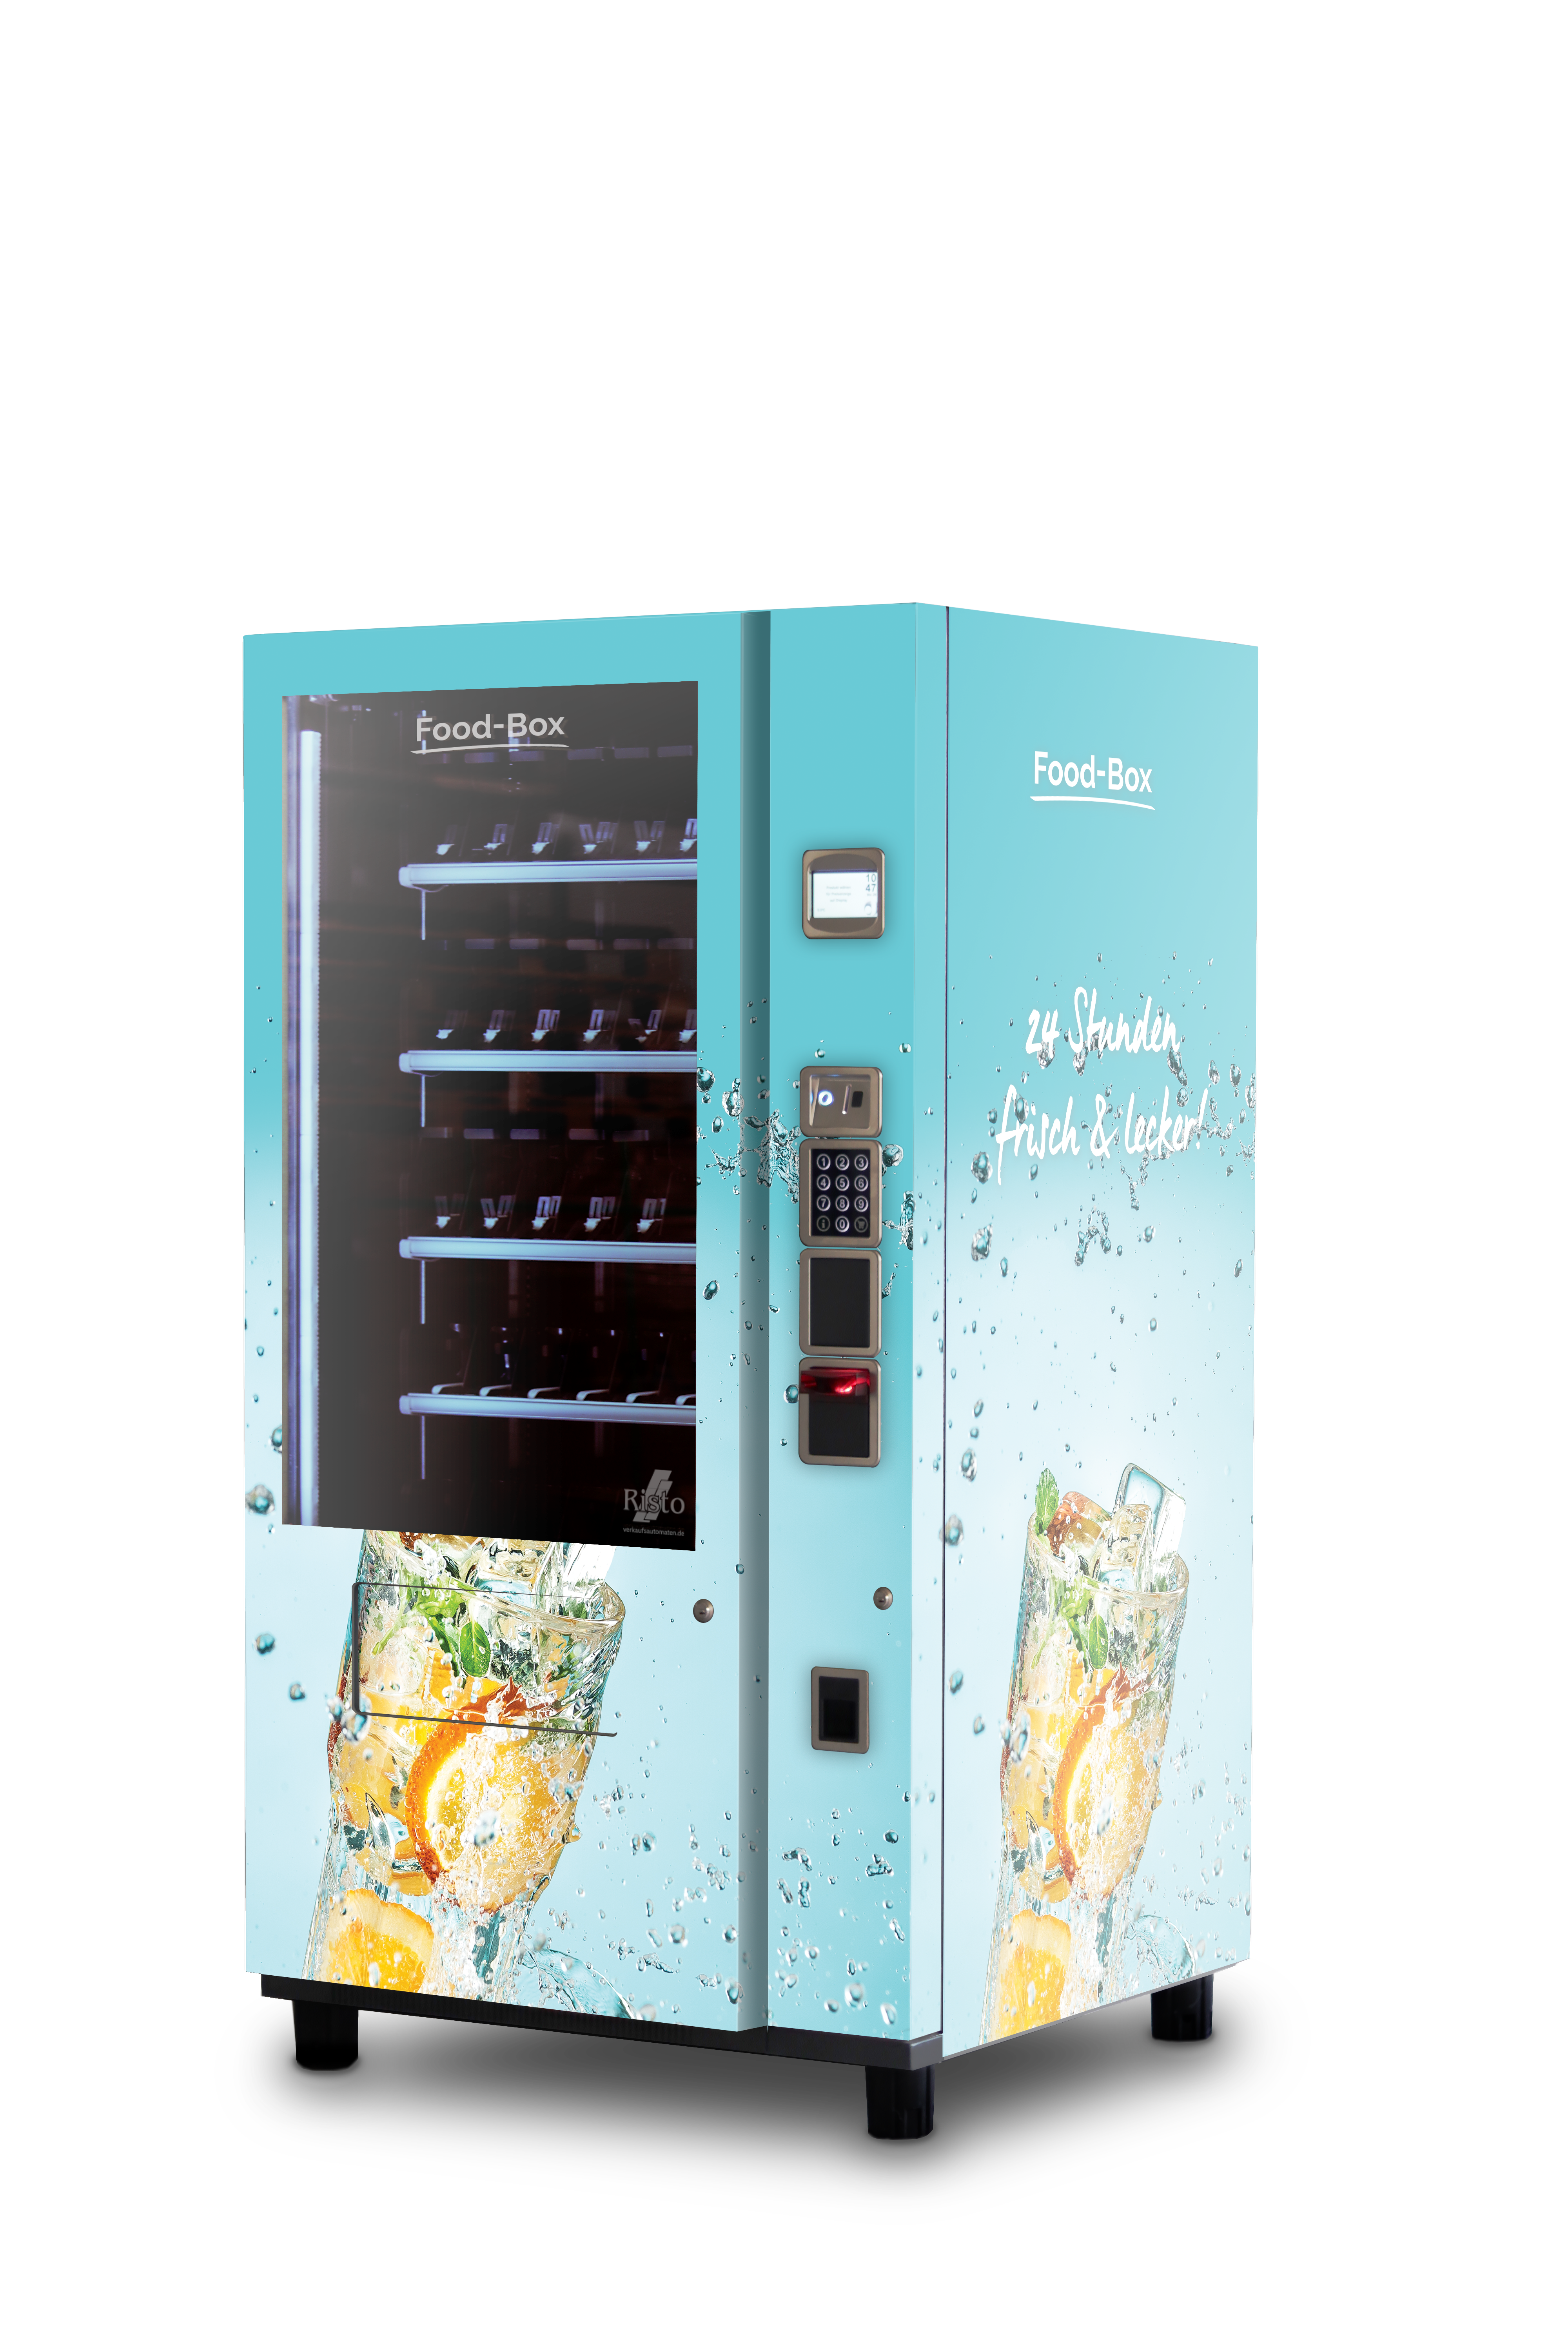 Machine automatique à thé au lait, distributeur automatique de thé au lait,  machine à consommation en libre-service